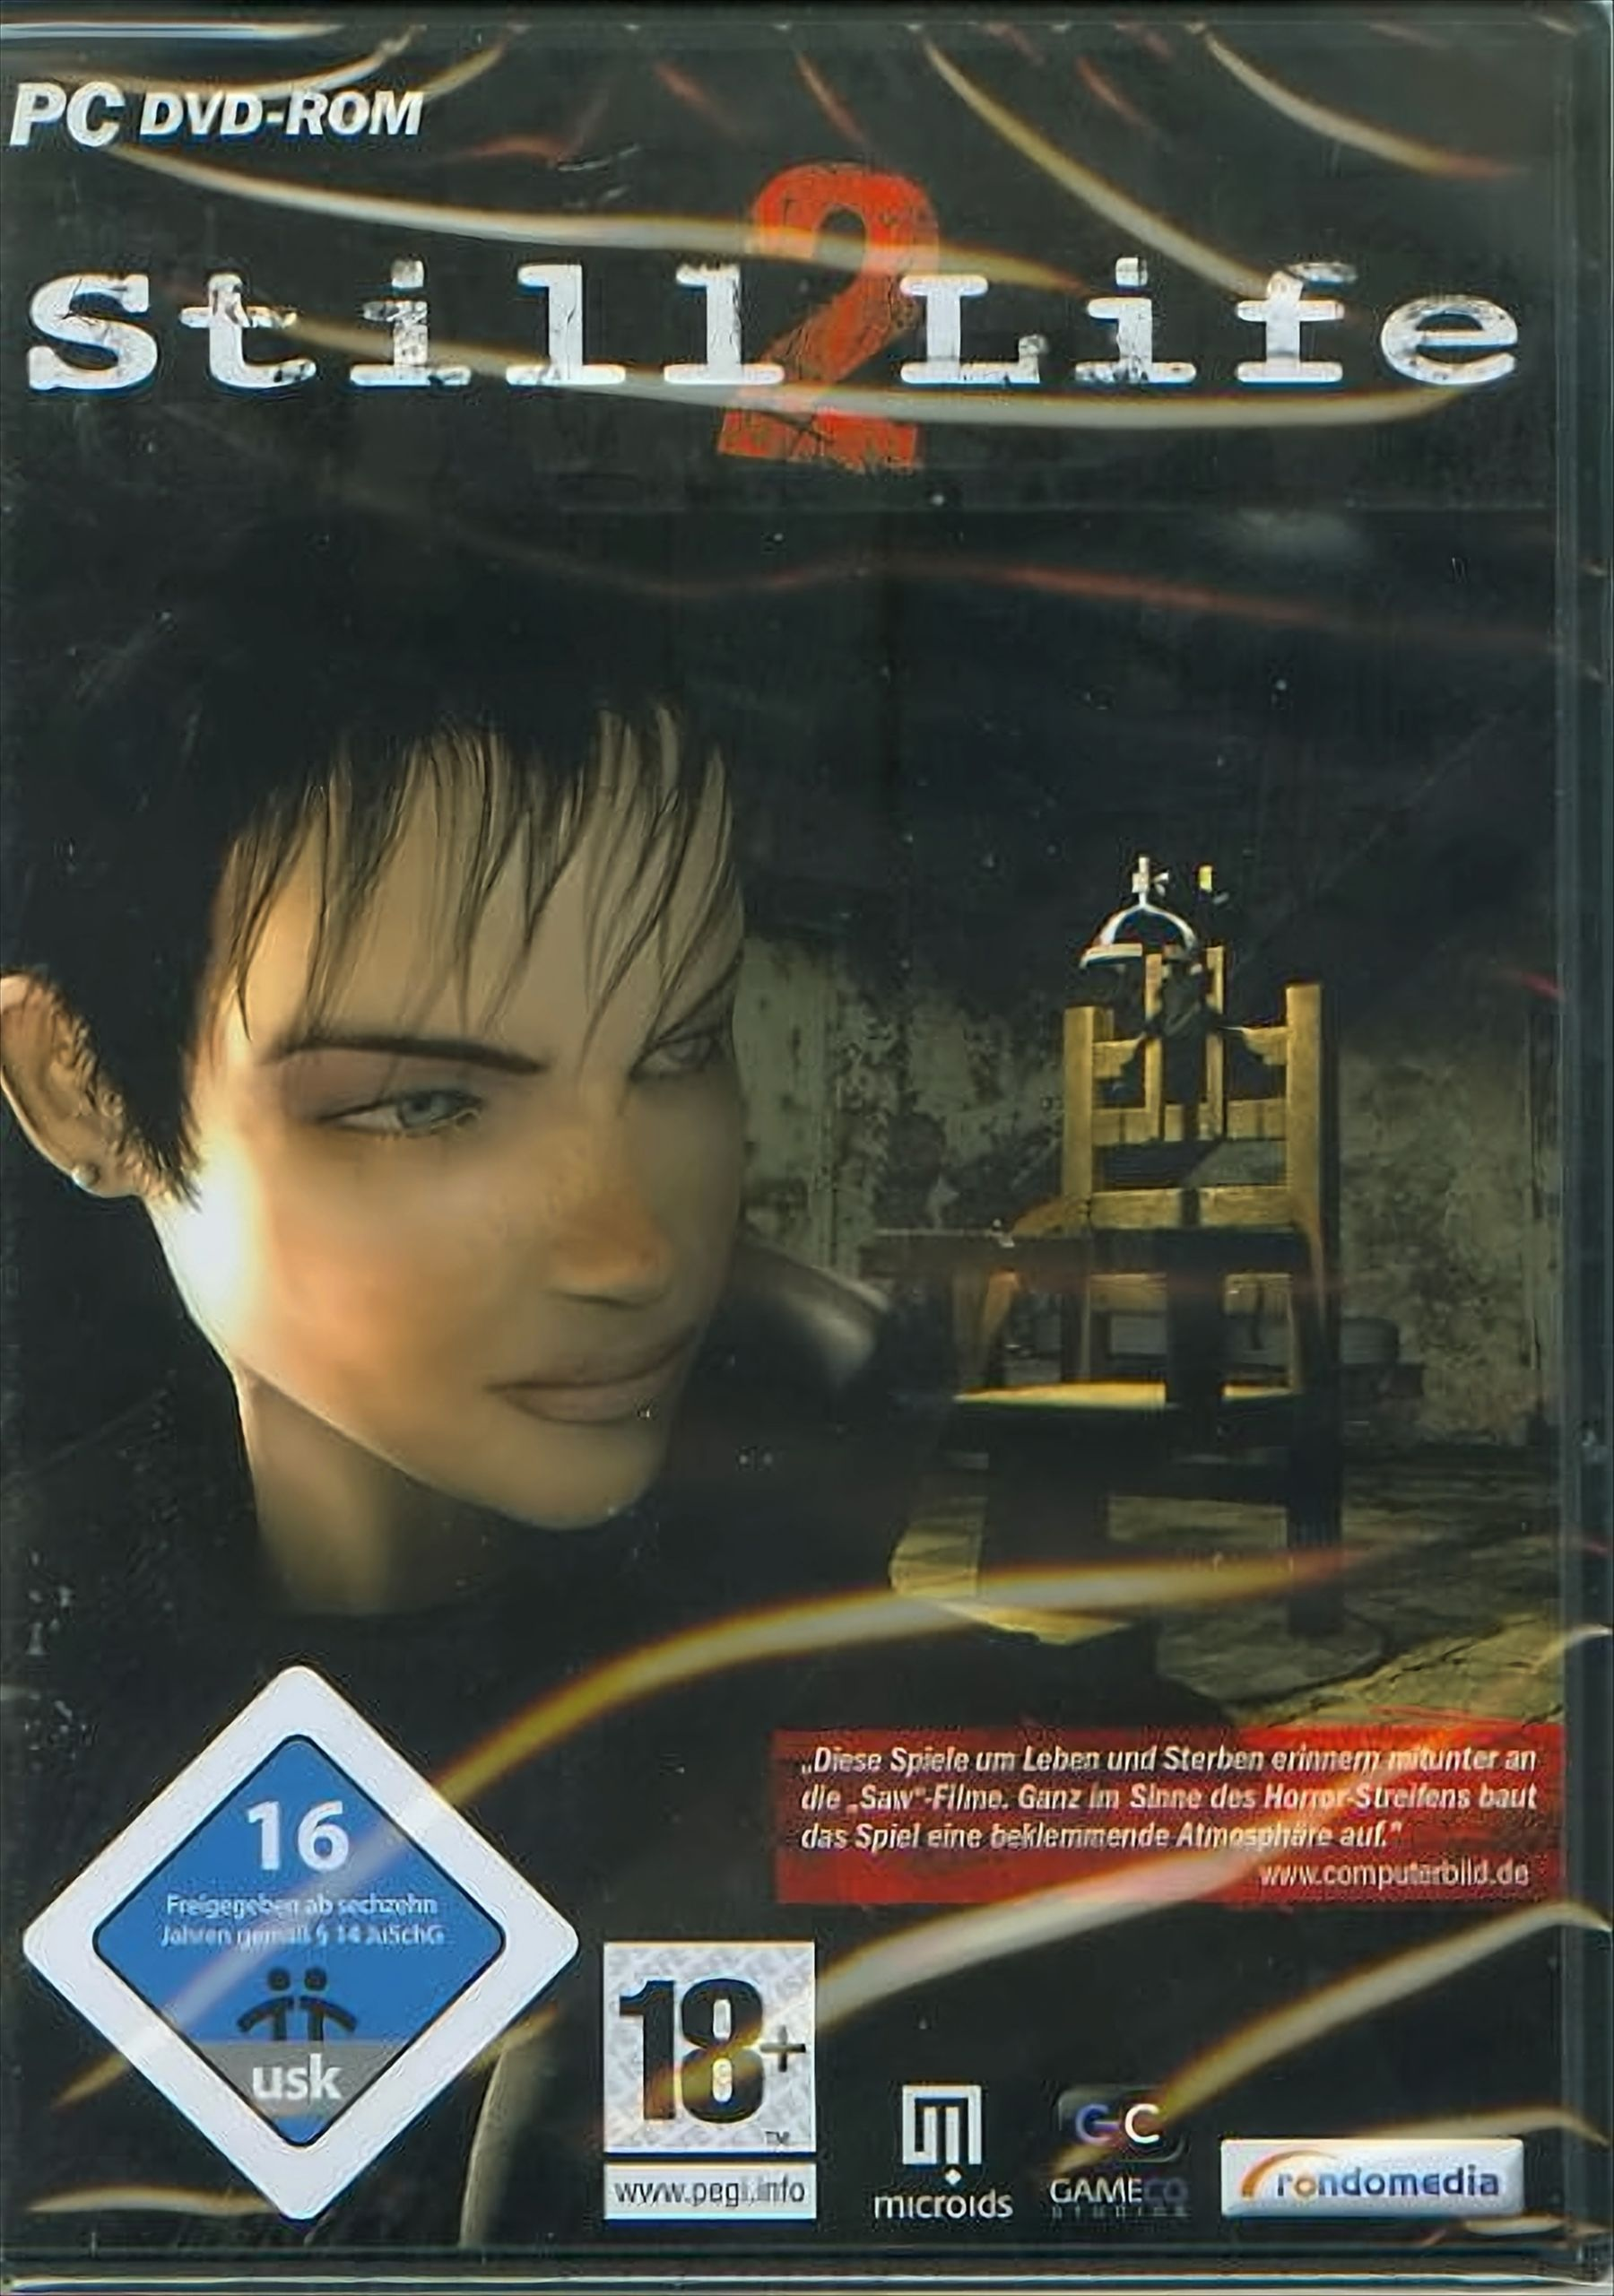 Life [PC] Still 2 - DVD-ROM